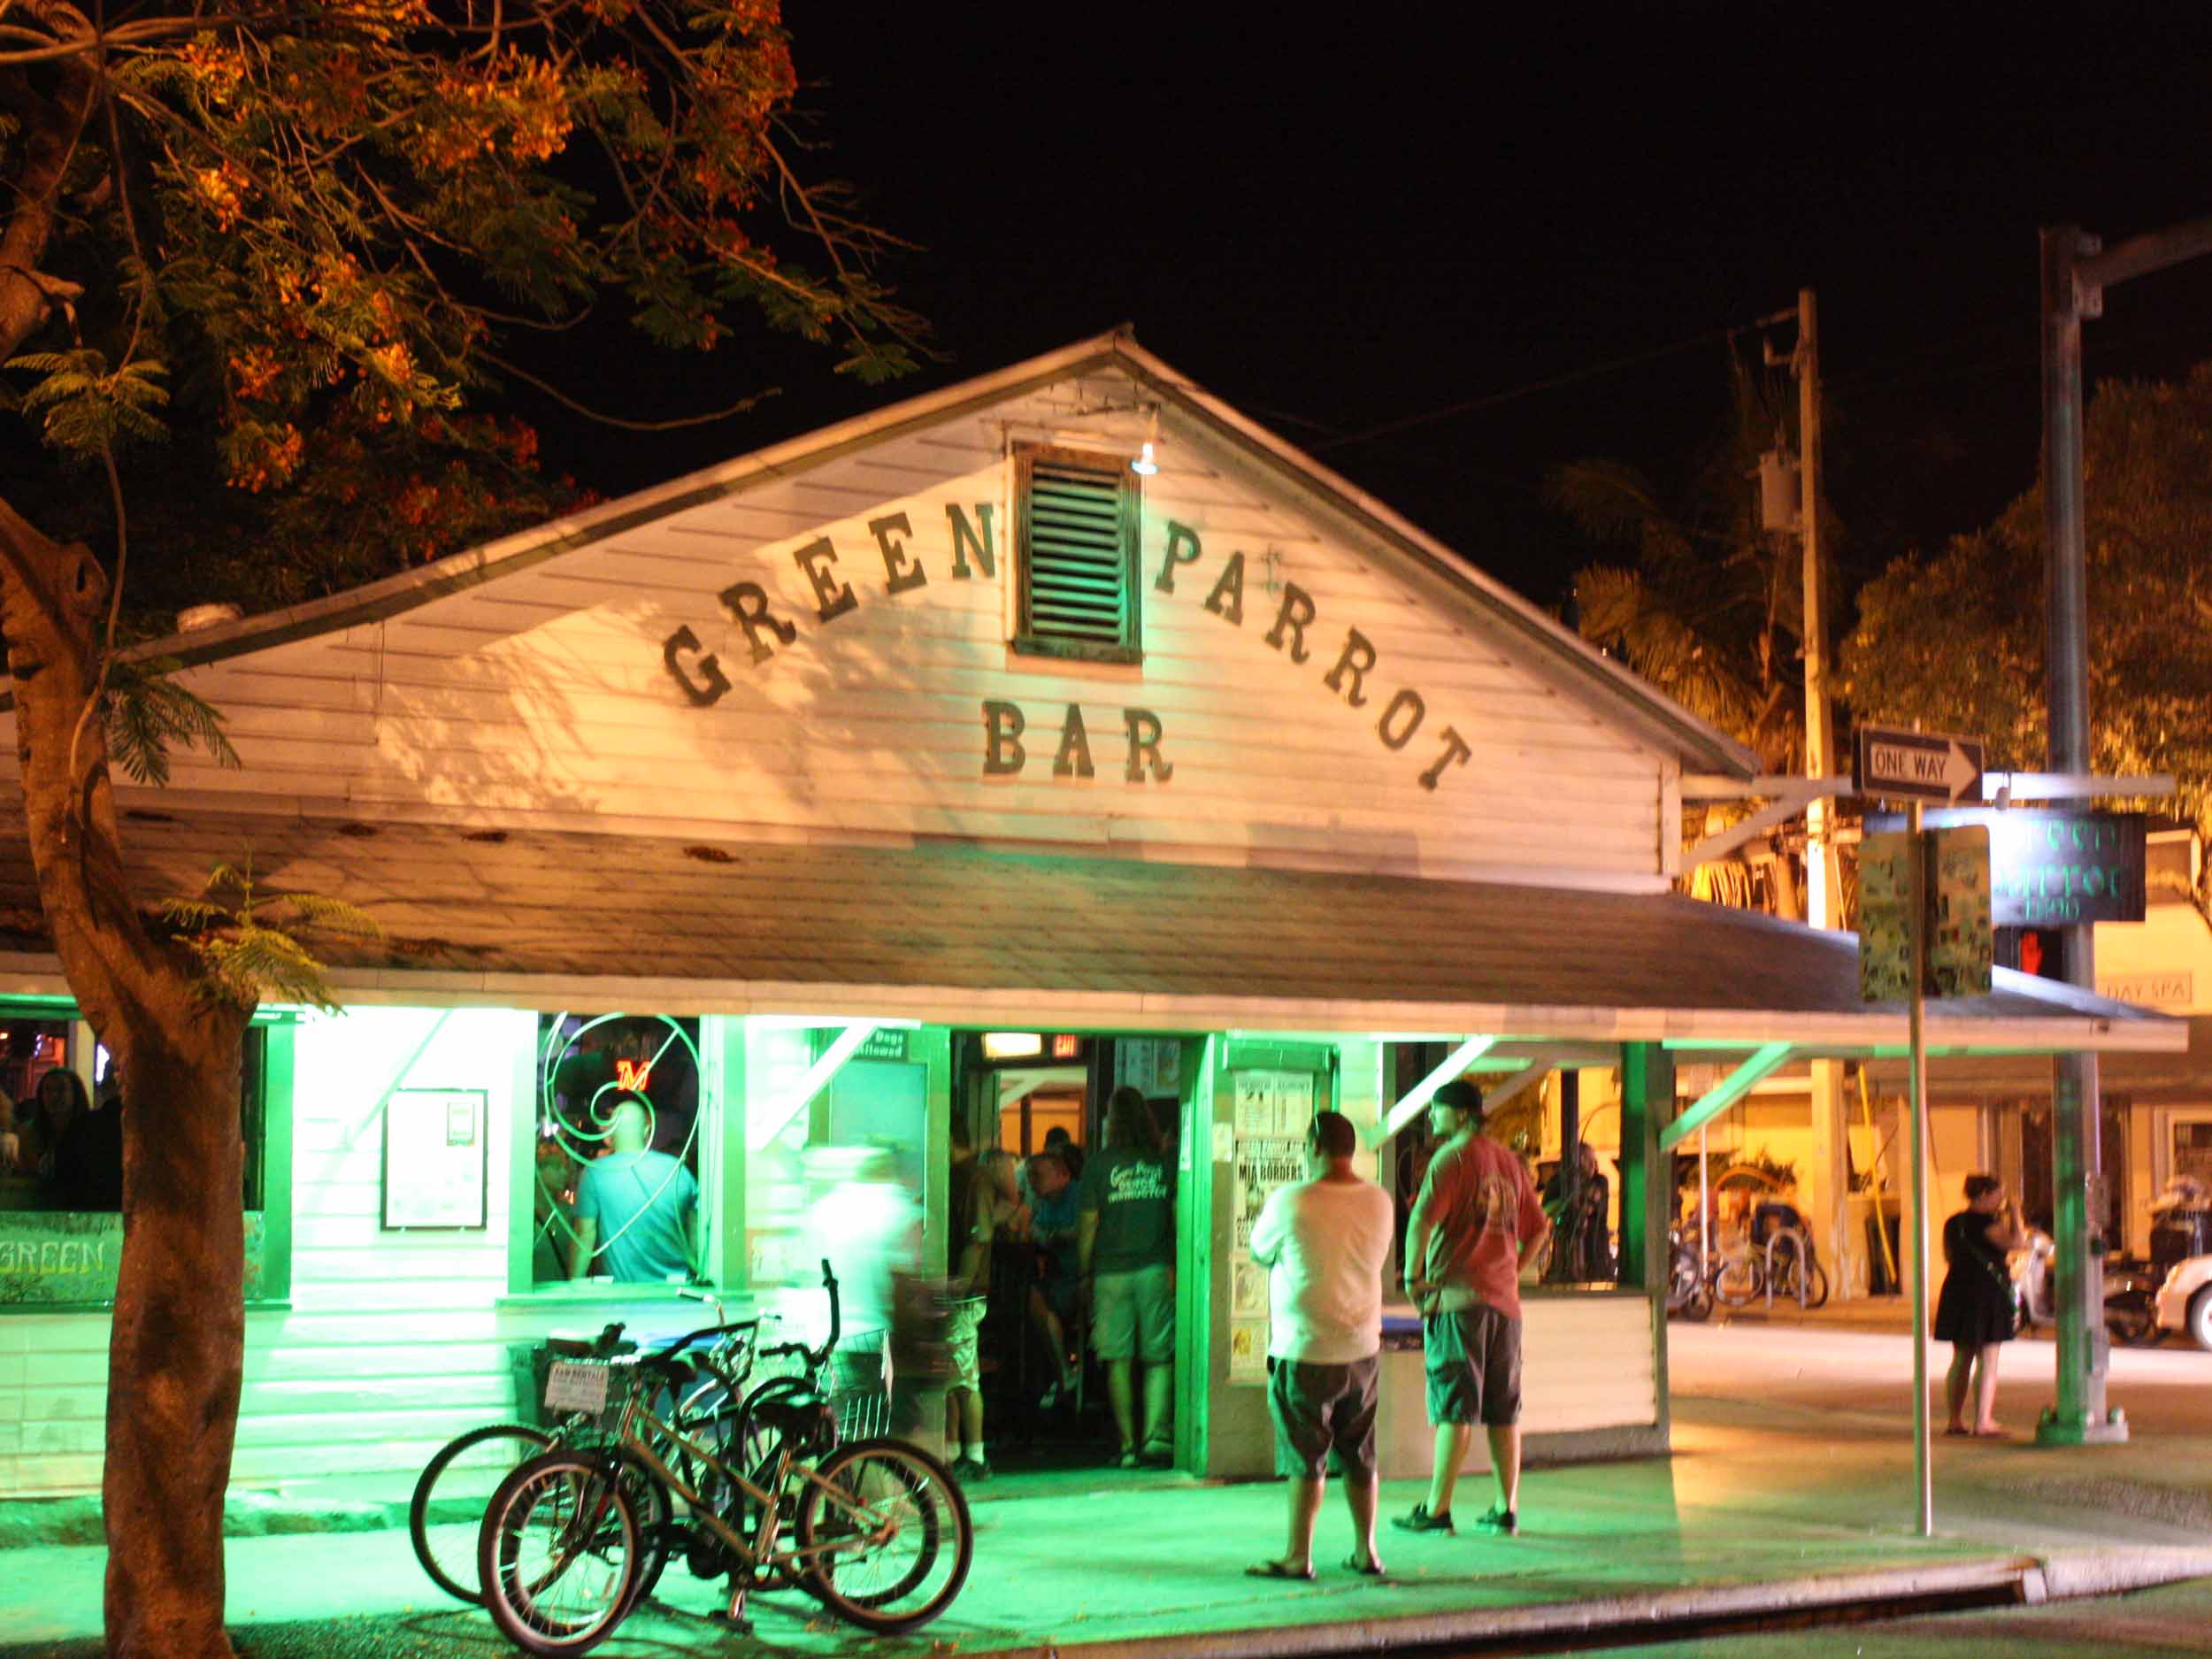 Green Parrot Bar Entrance at Night